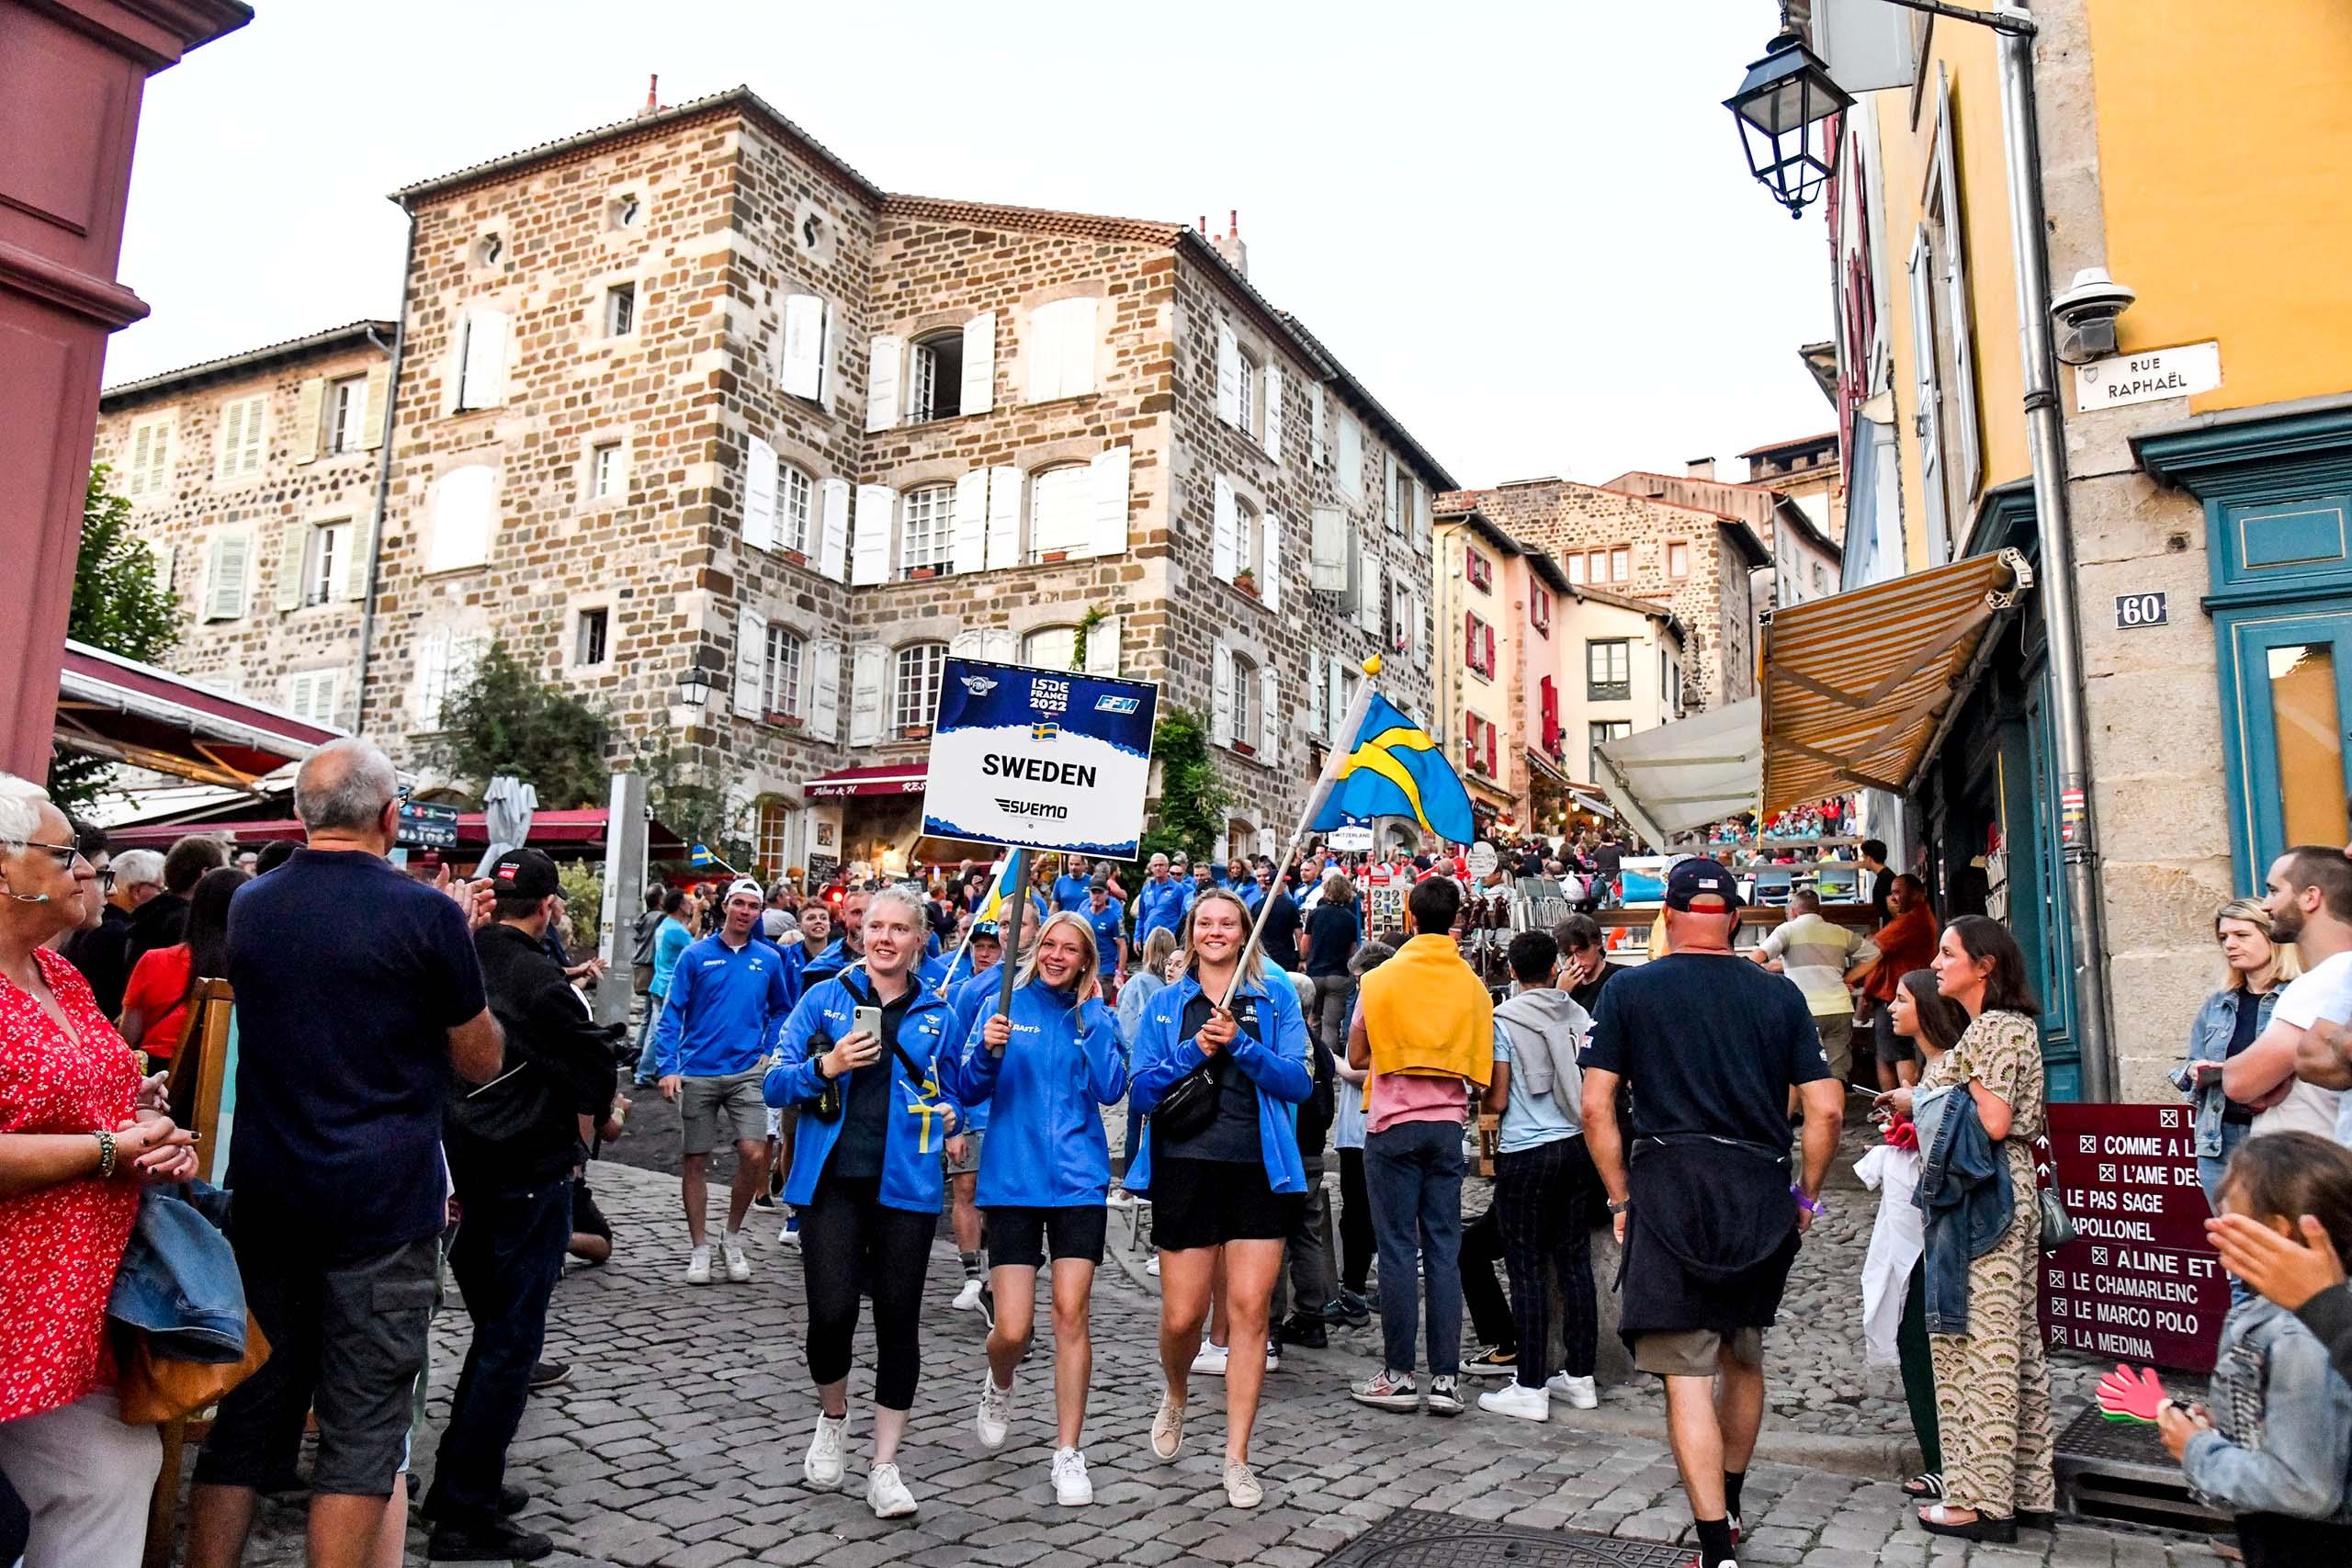 Många glada personer i blå-gula kläder på gatan håller upp en skylt som det står Sweden Svemo på, och viftar med den svenska flaggan